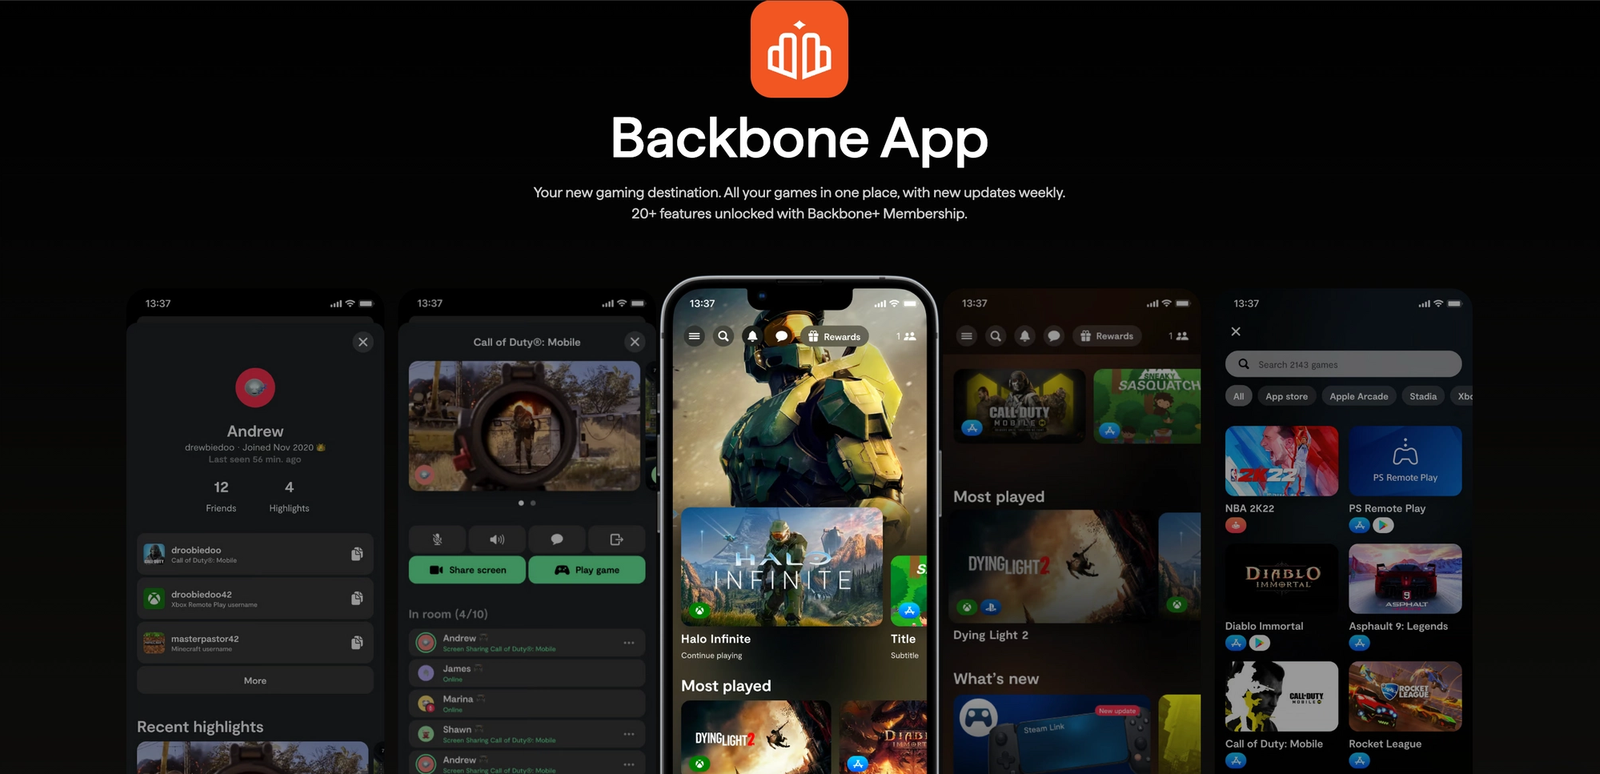 Is Backbone app free